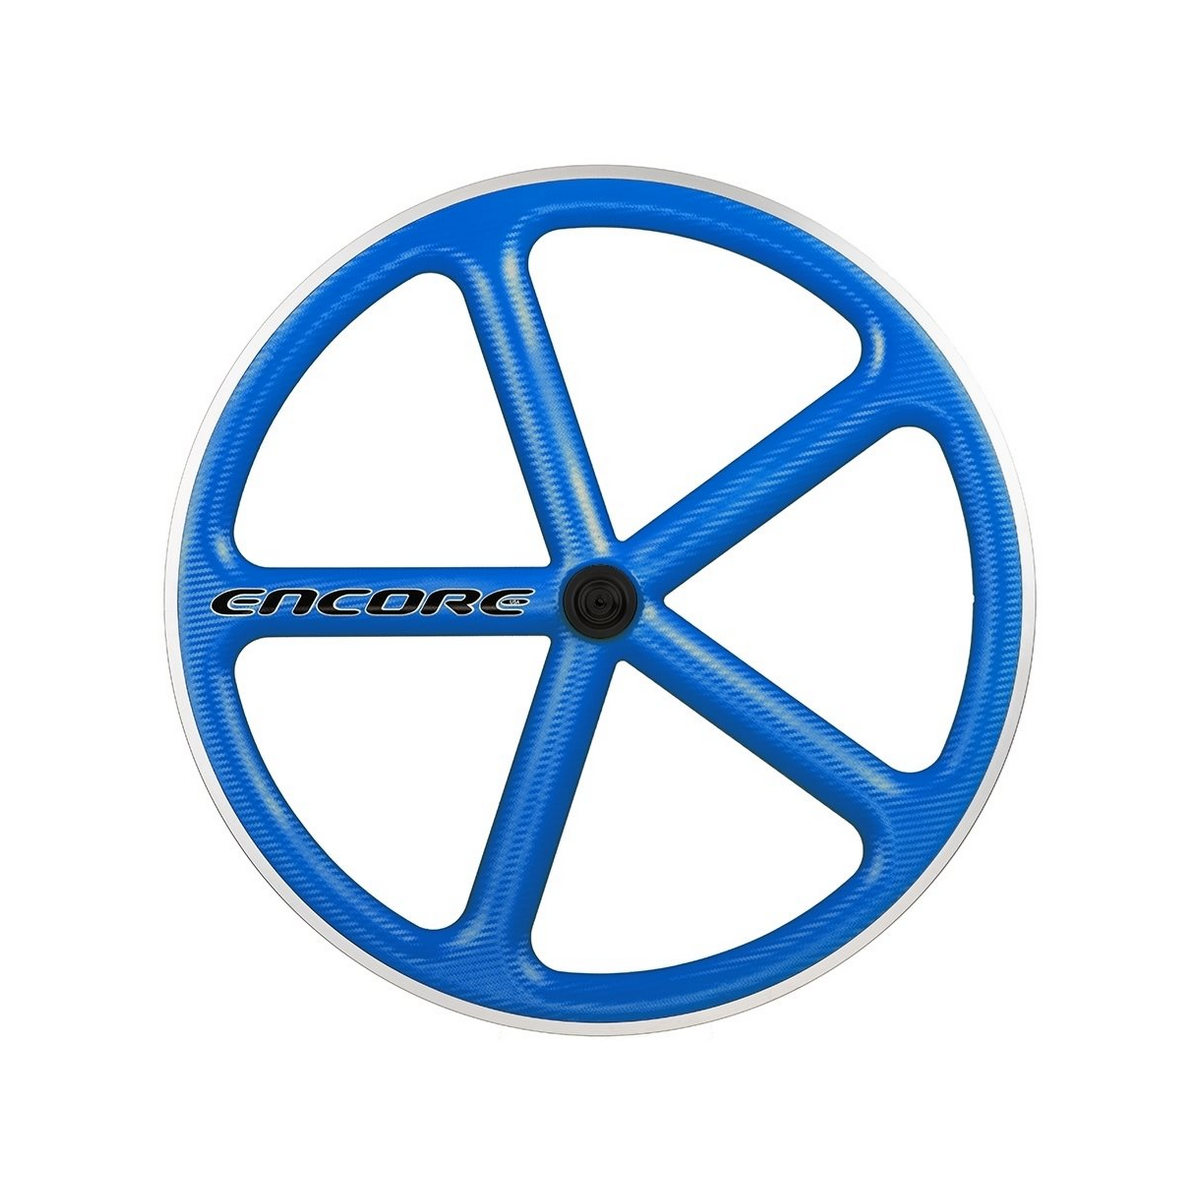 Hinterrad 700c Track 5 Speichen Carbon Geflecht blau msw